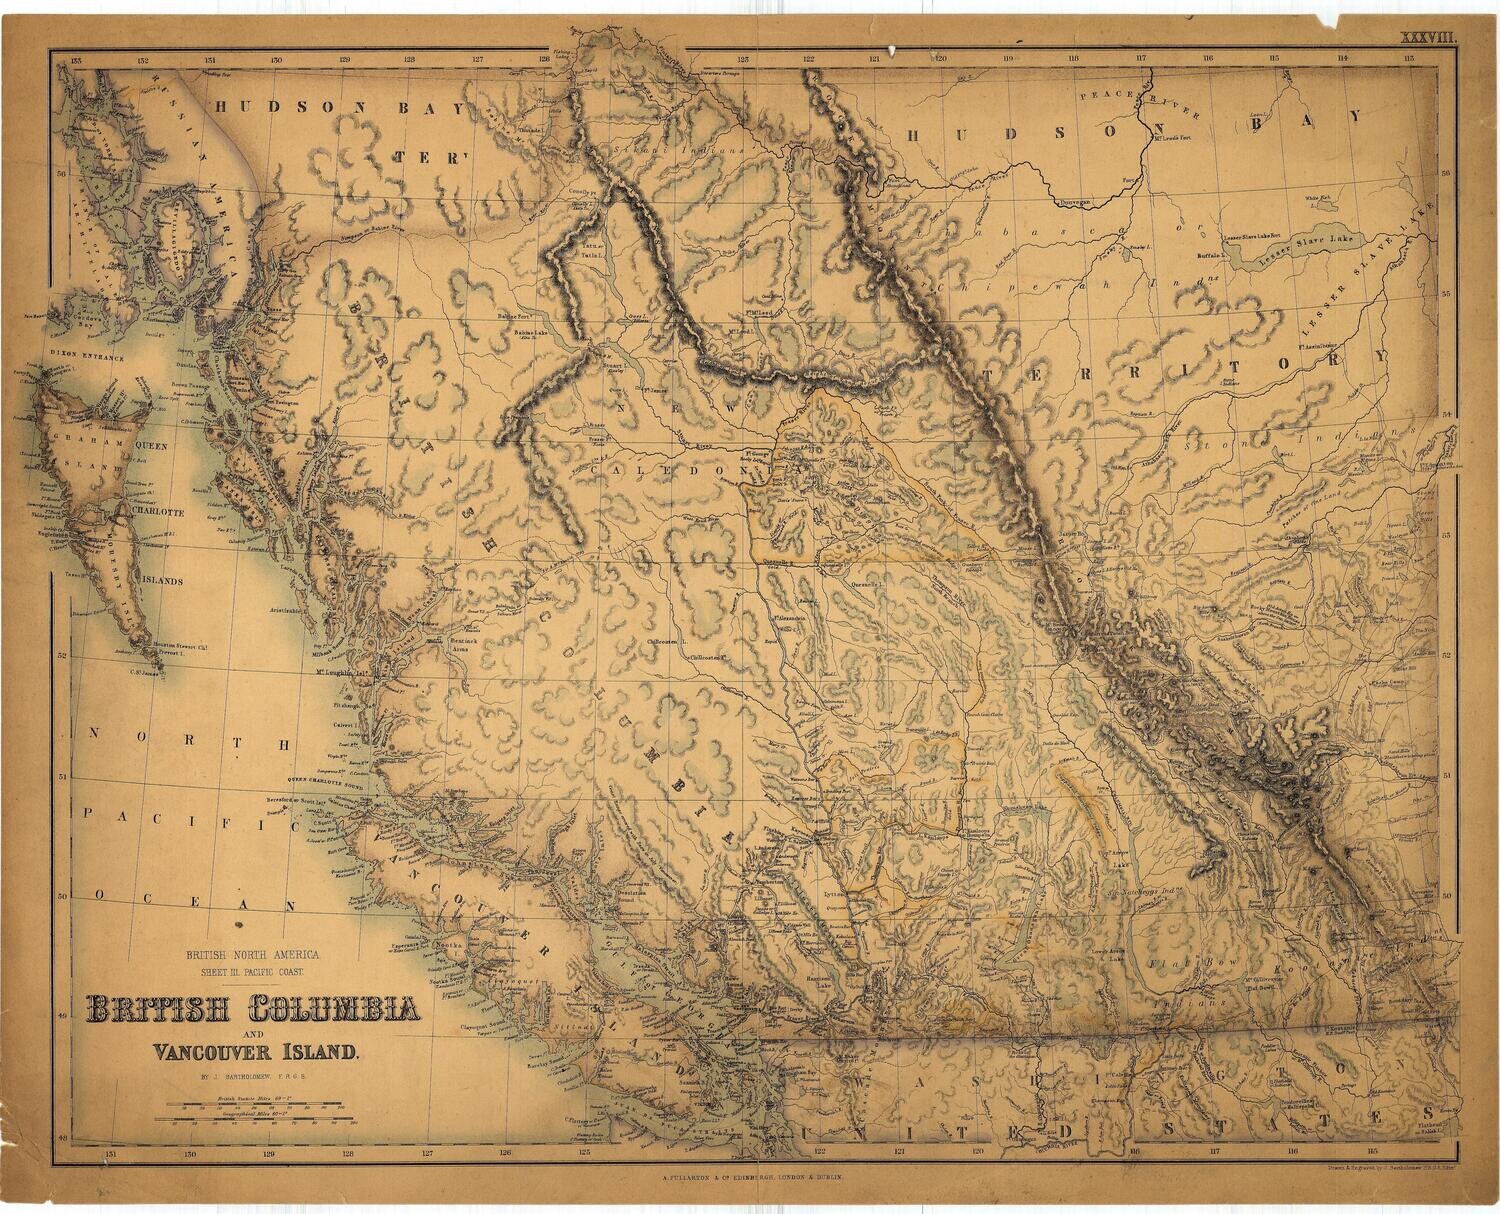 1879 Map of British Columbia